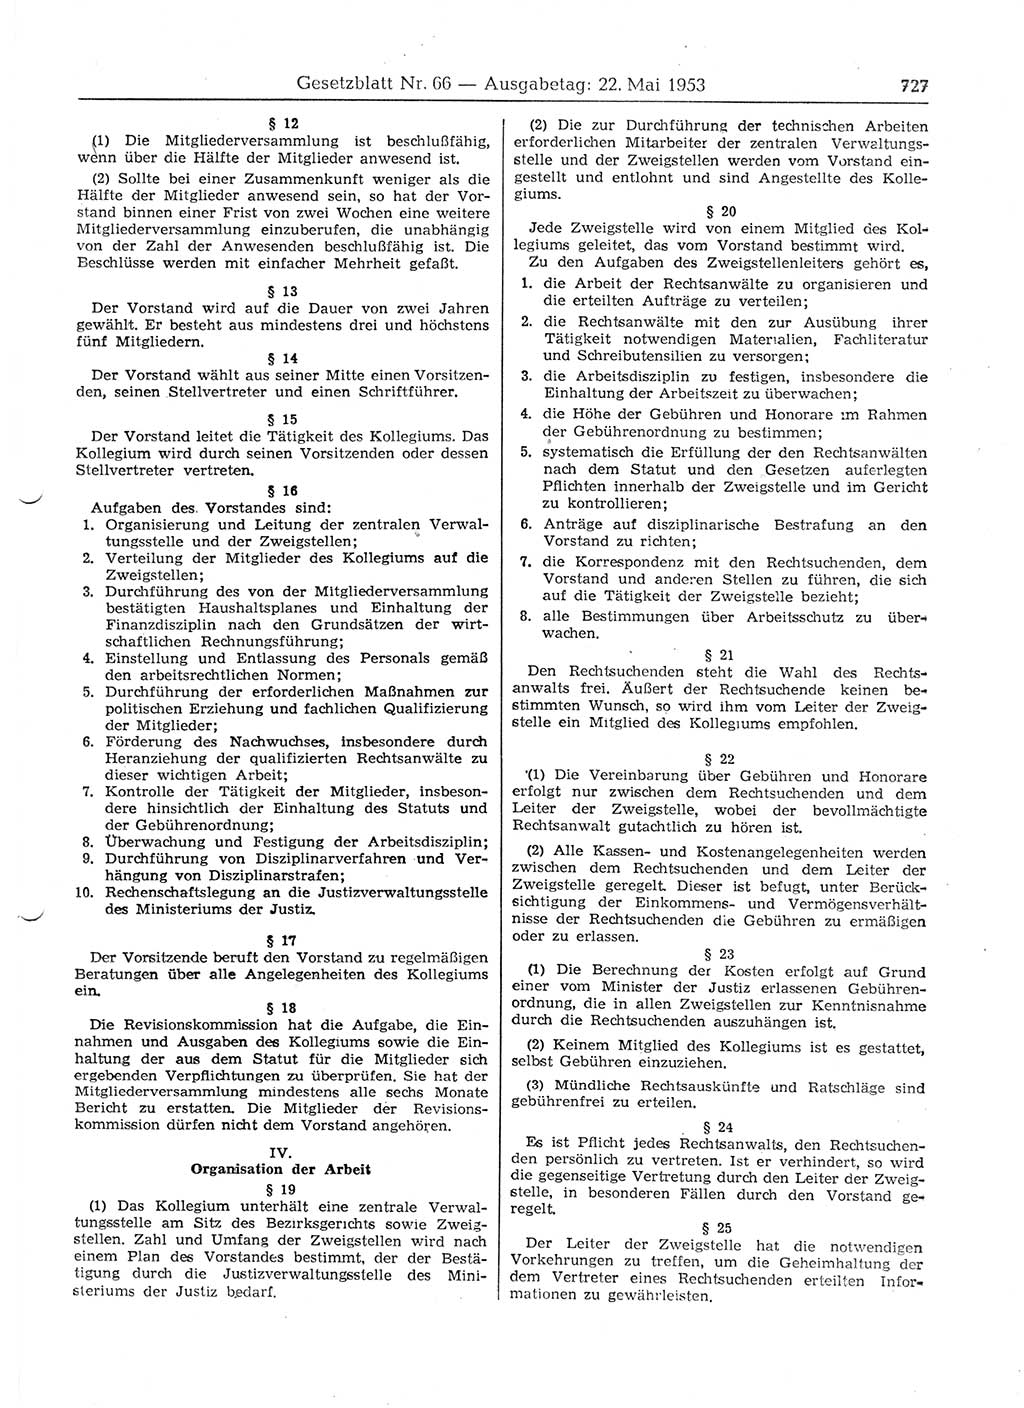 Gesetzblatt (GBl.) der Deutschen Demokratischen Republik (DDR) 1953, Seite 727 (GBl. DDR 1953, S. 727)